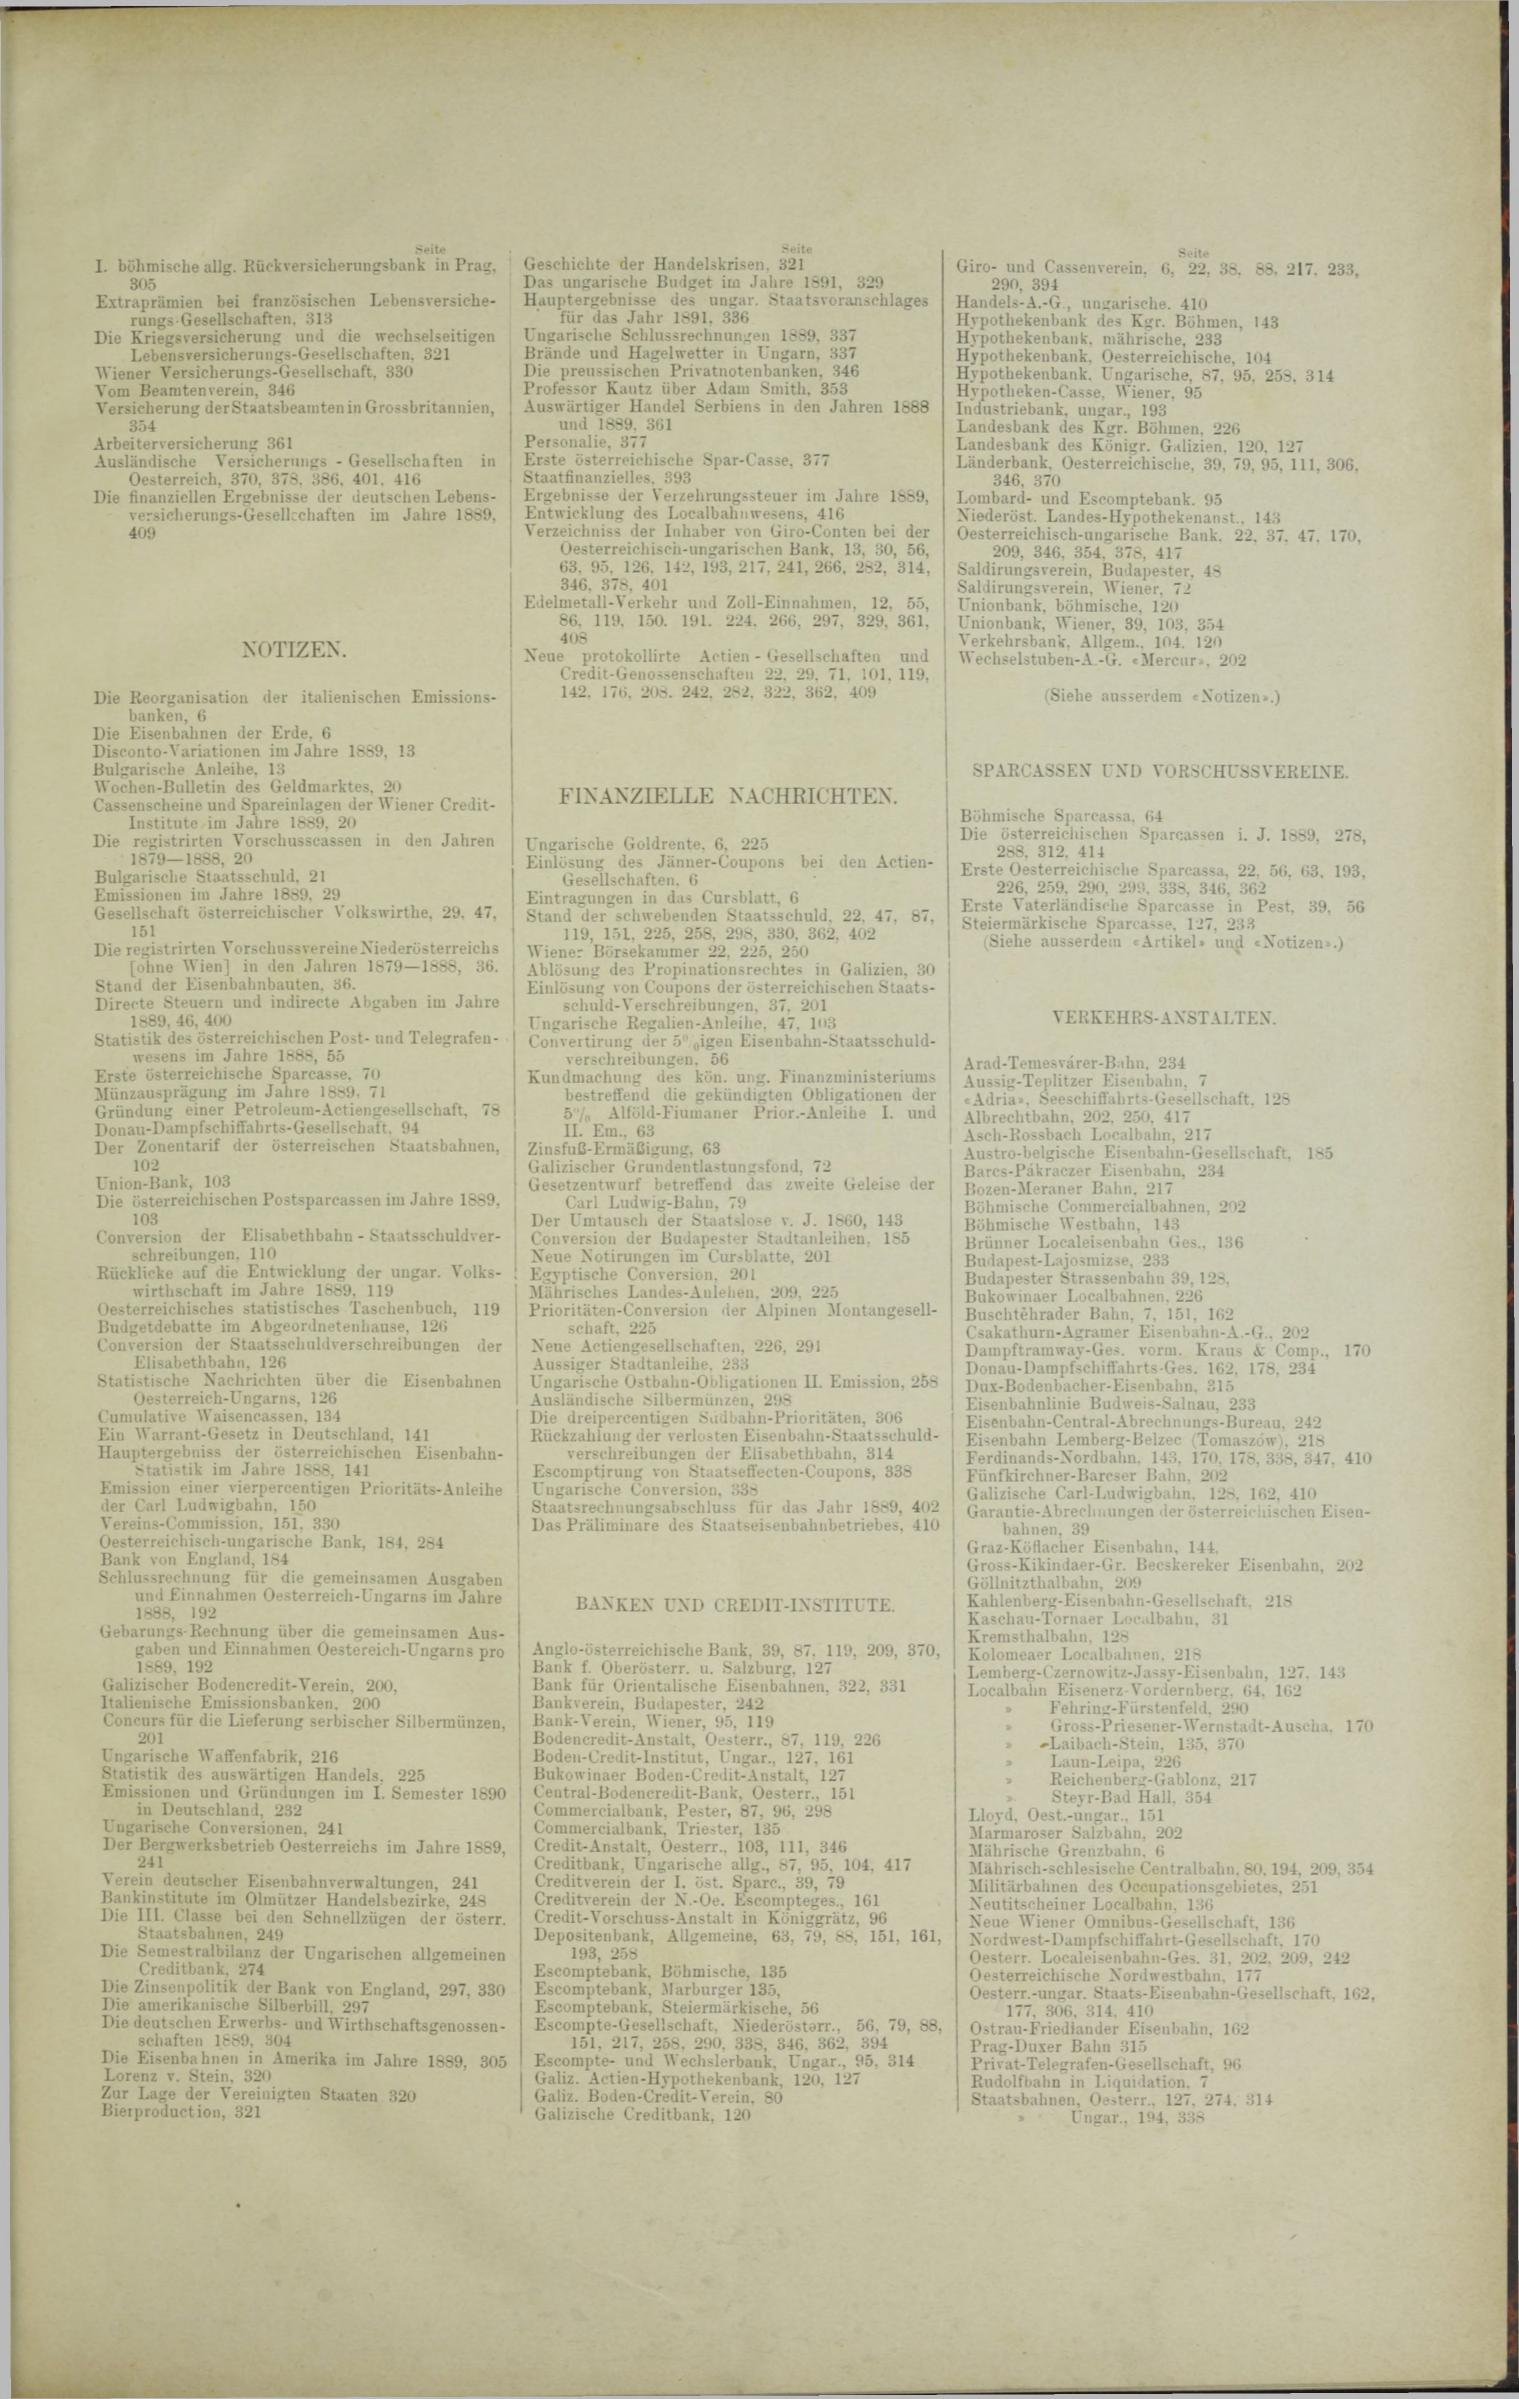 Der Tresor 06.11.1890 - Seite 11